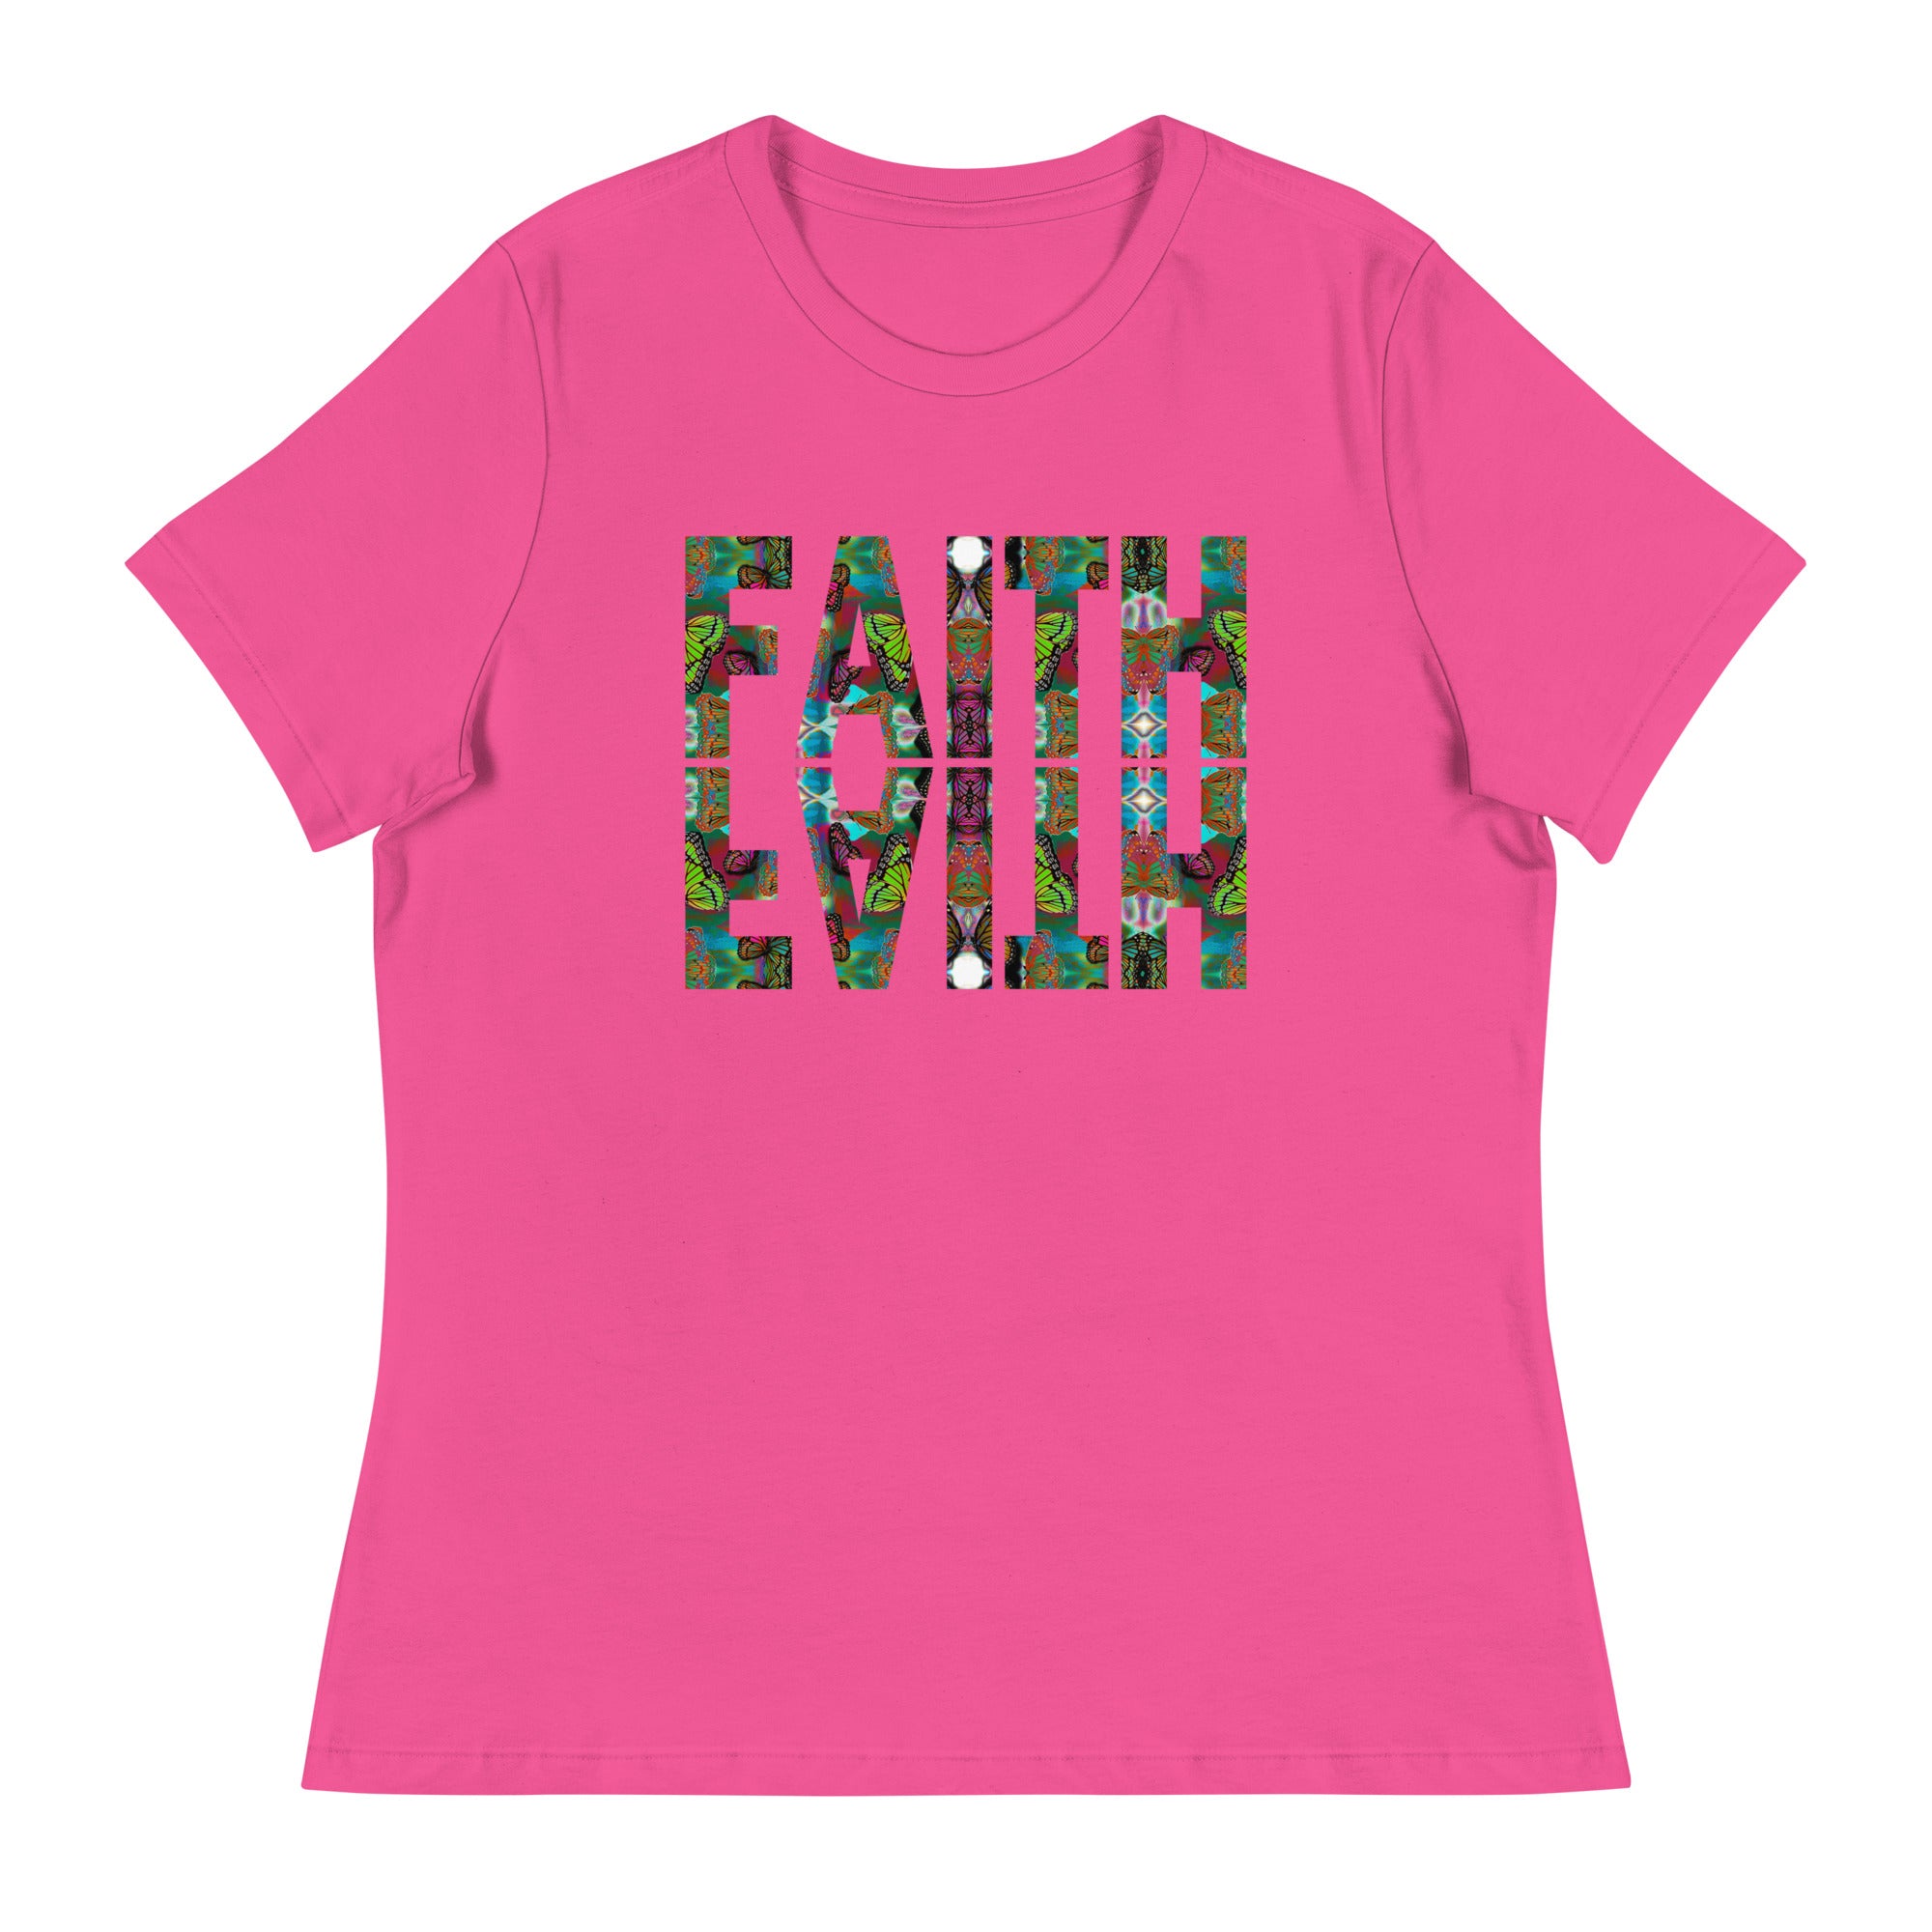 FAITH ~ Women's Graphic T-Shirt, Butterfly Word Art Short Sleeve Top